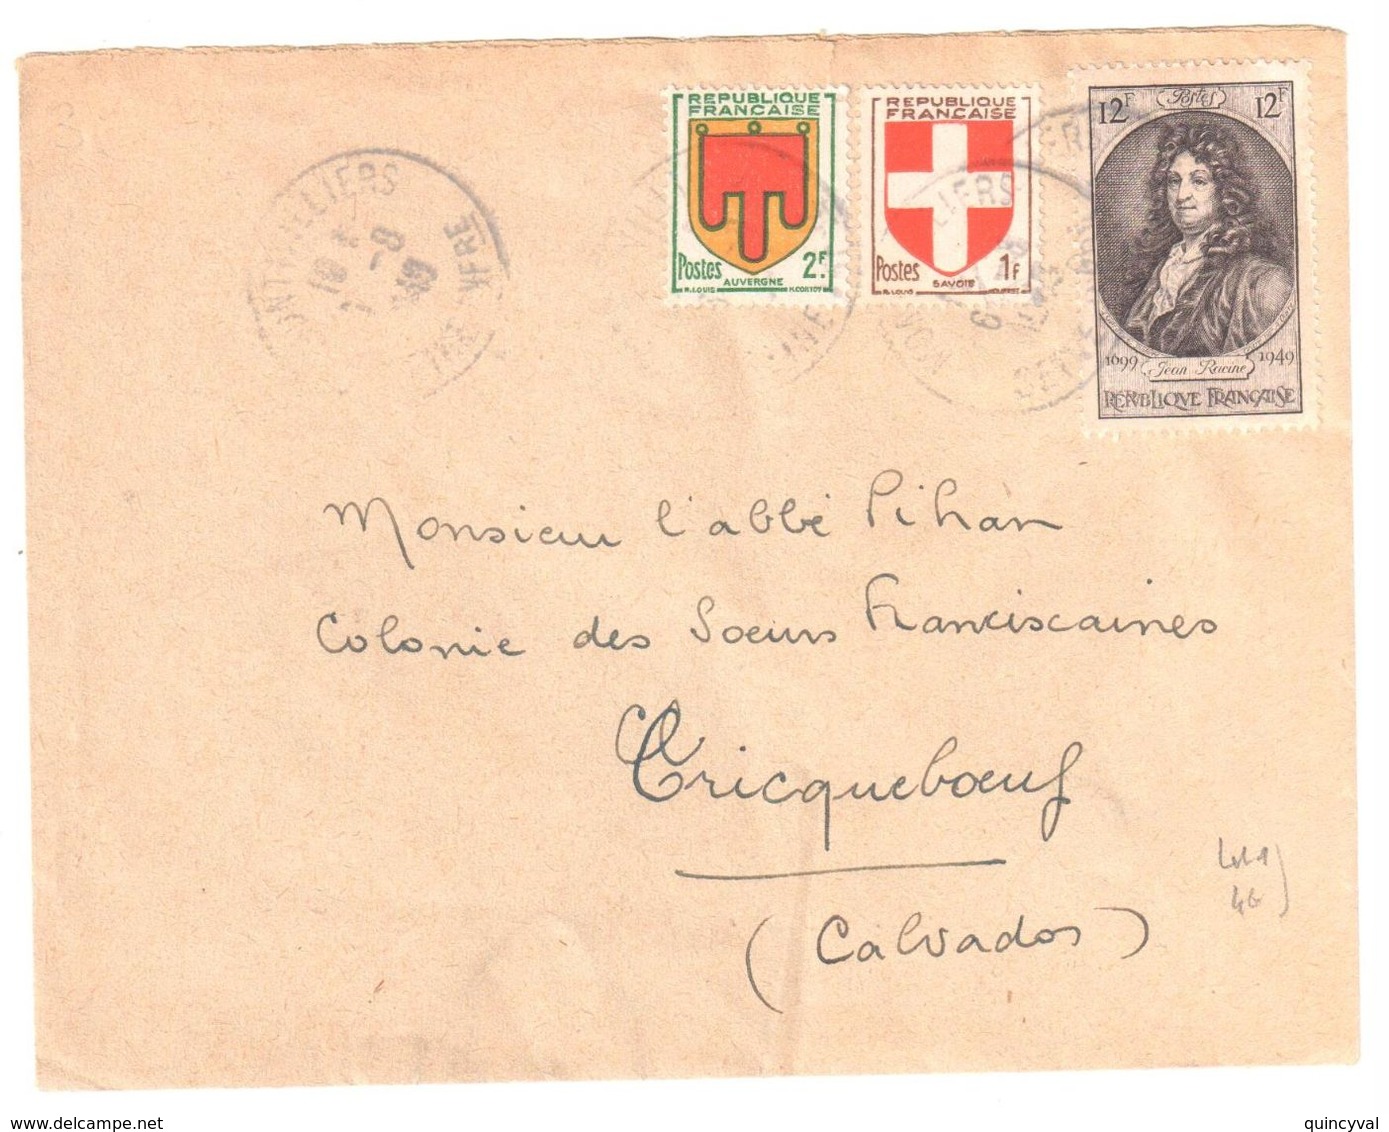 MONTVILLIERS Seine Inférieure Lettre 12F Racine Blason 2 F Auvergne 1 F Savoie Yv  836 837  848 Ob 1949 - Covers & Documents